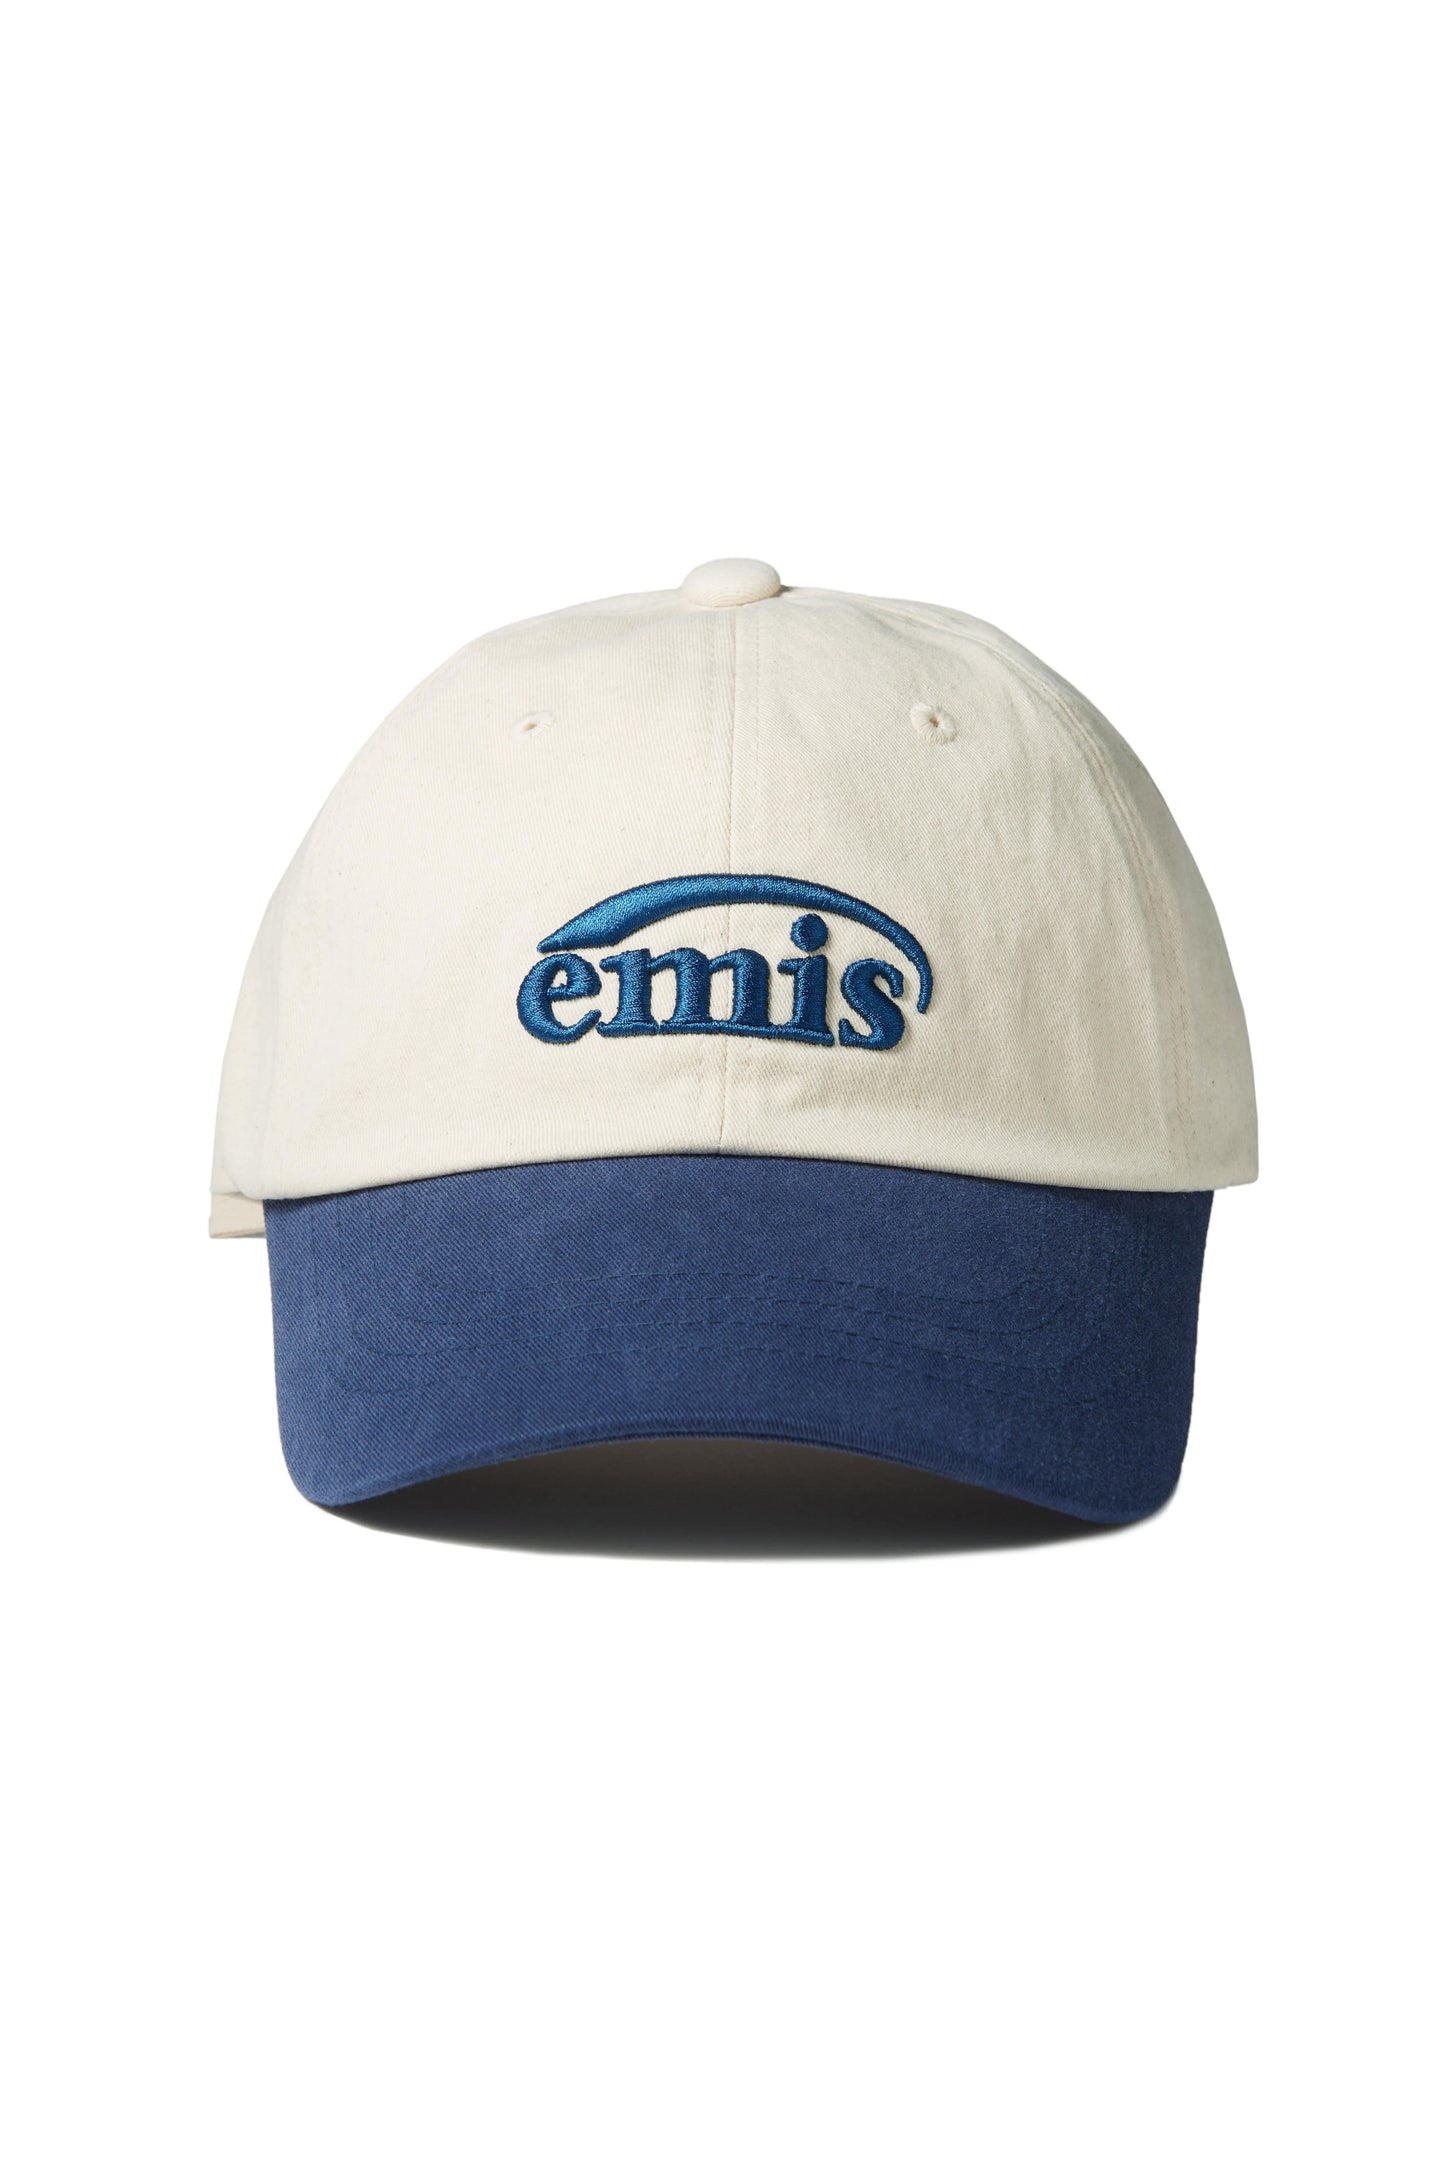 emis キャップ 帽子 ピンク 男女兼用 クリスマスファッション - 帽子